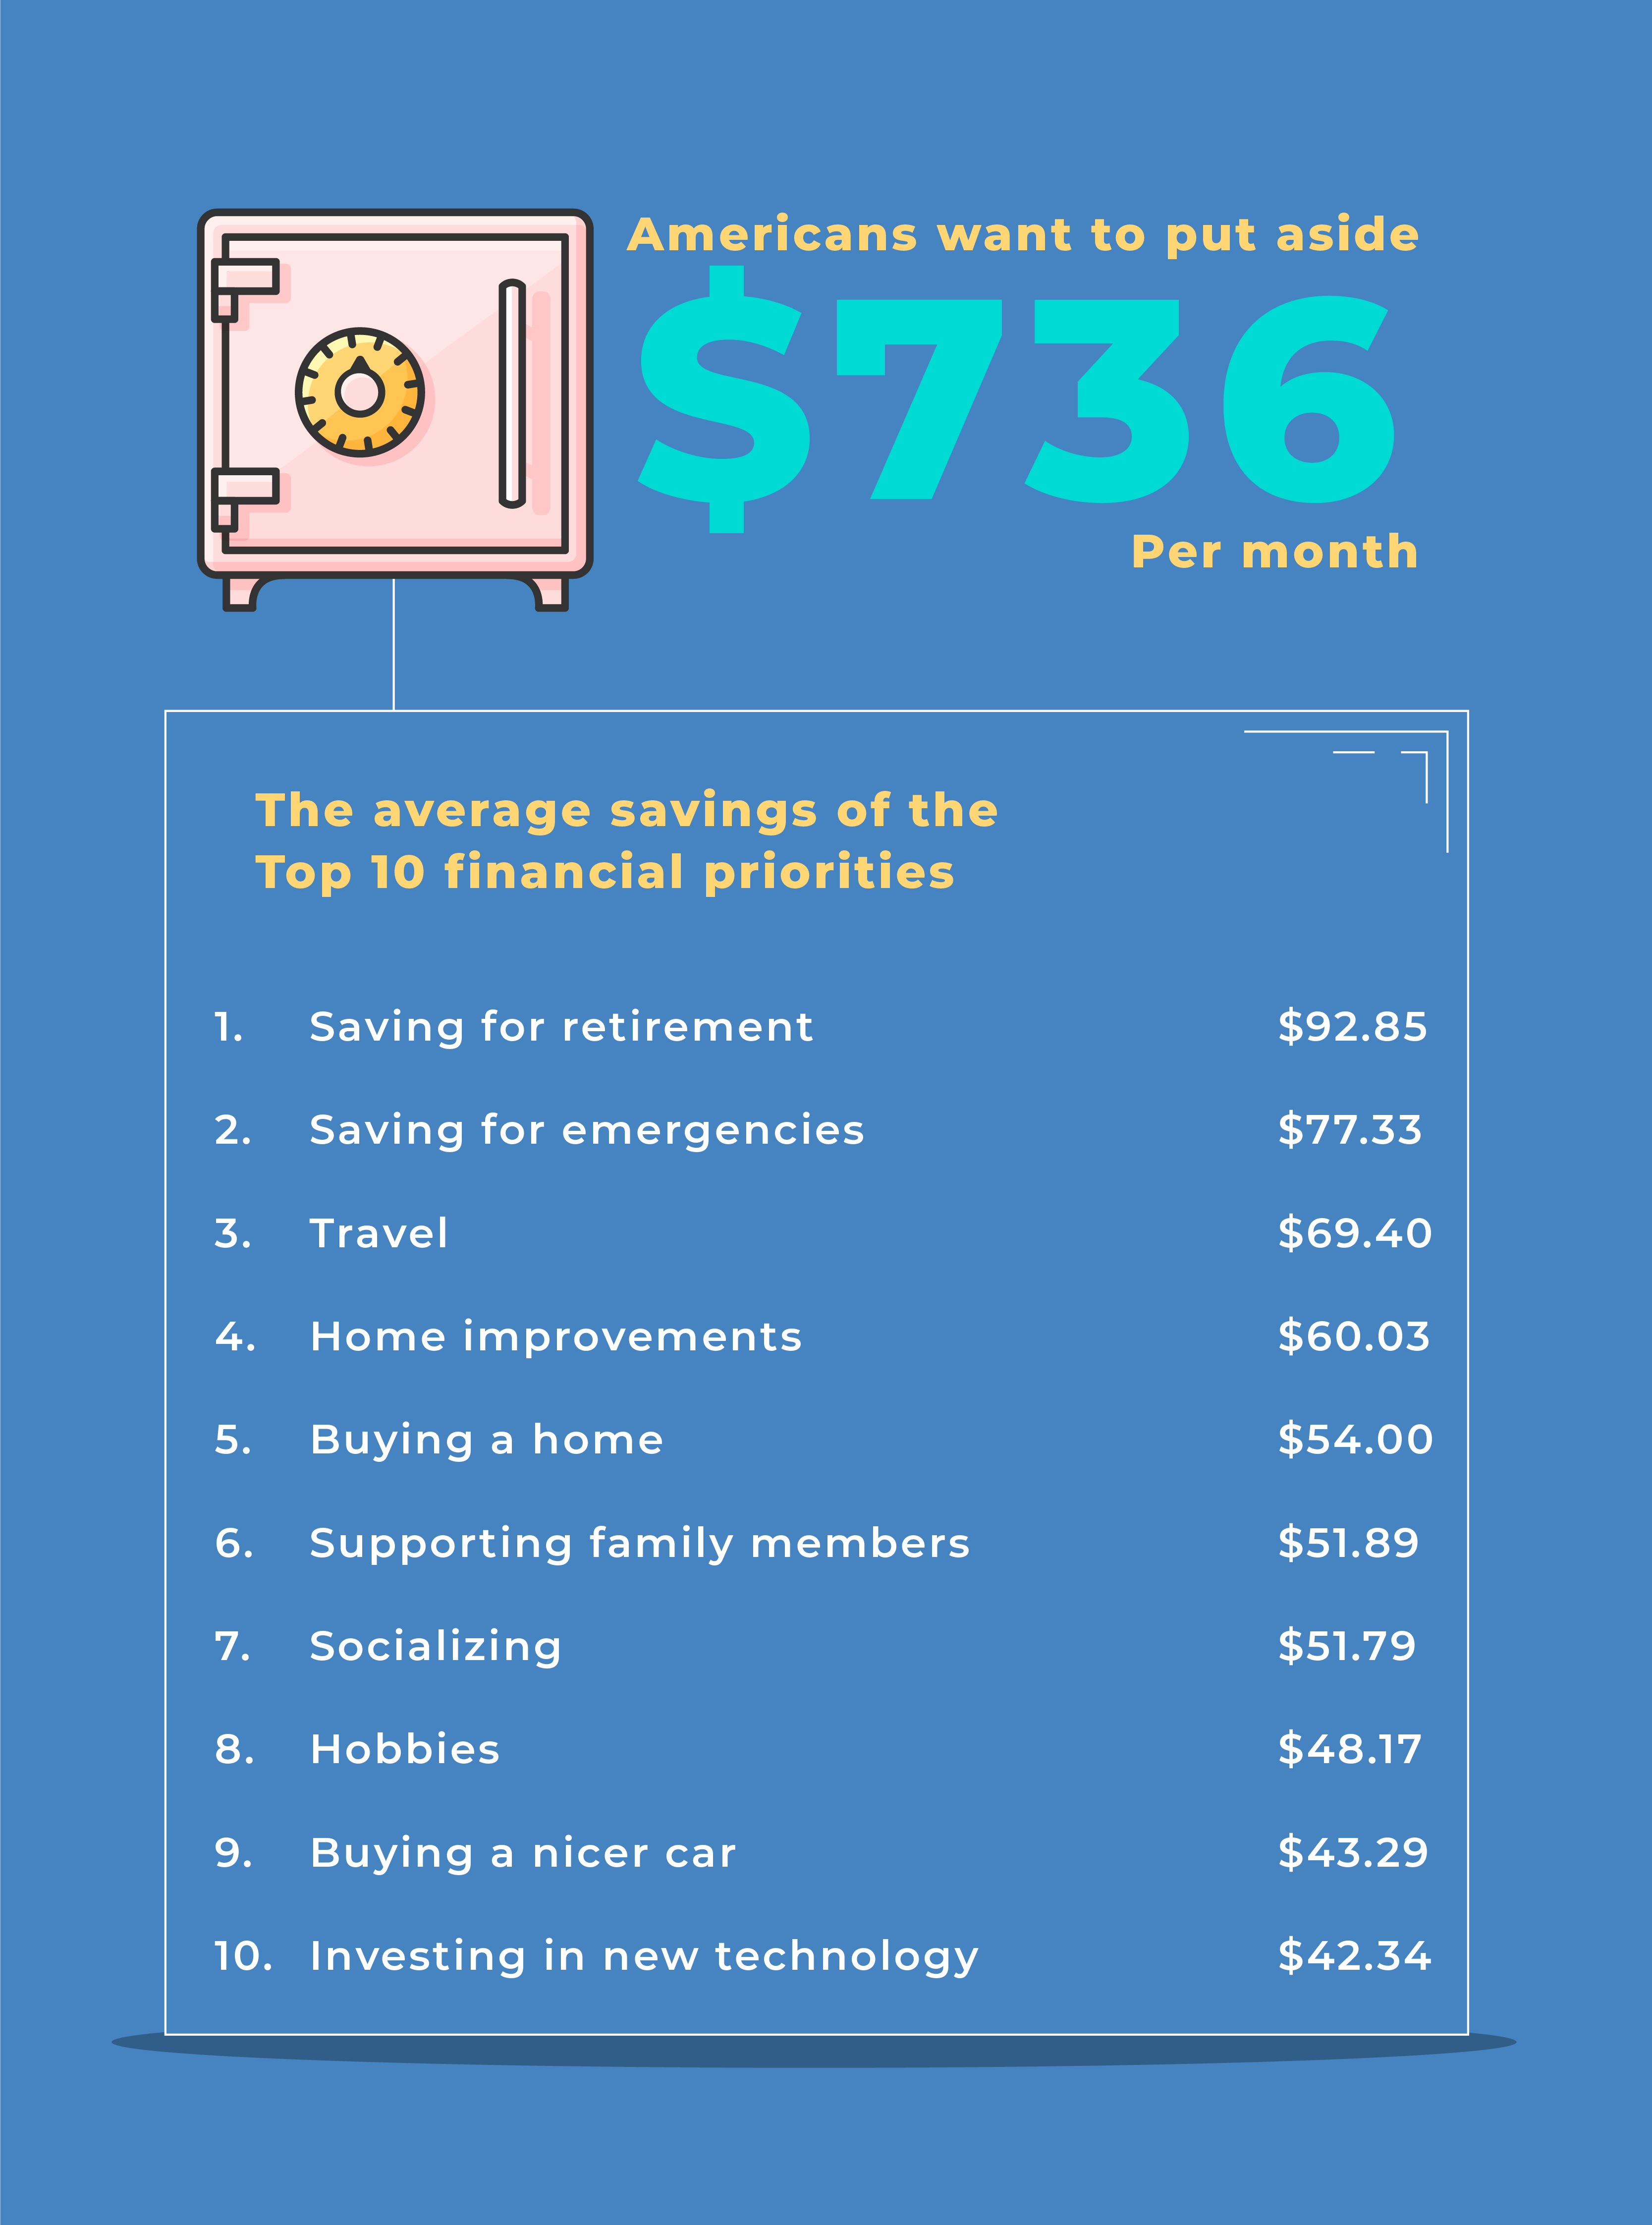 Average Savings